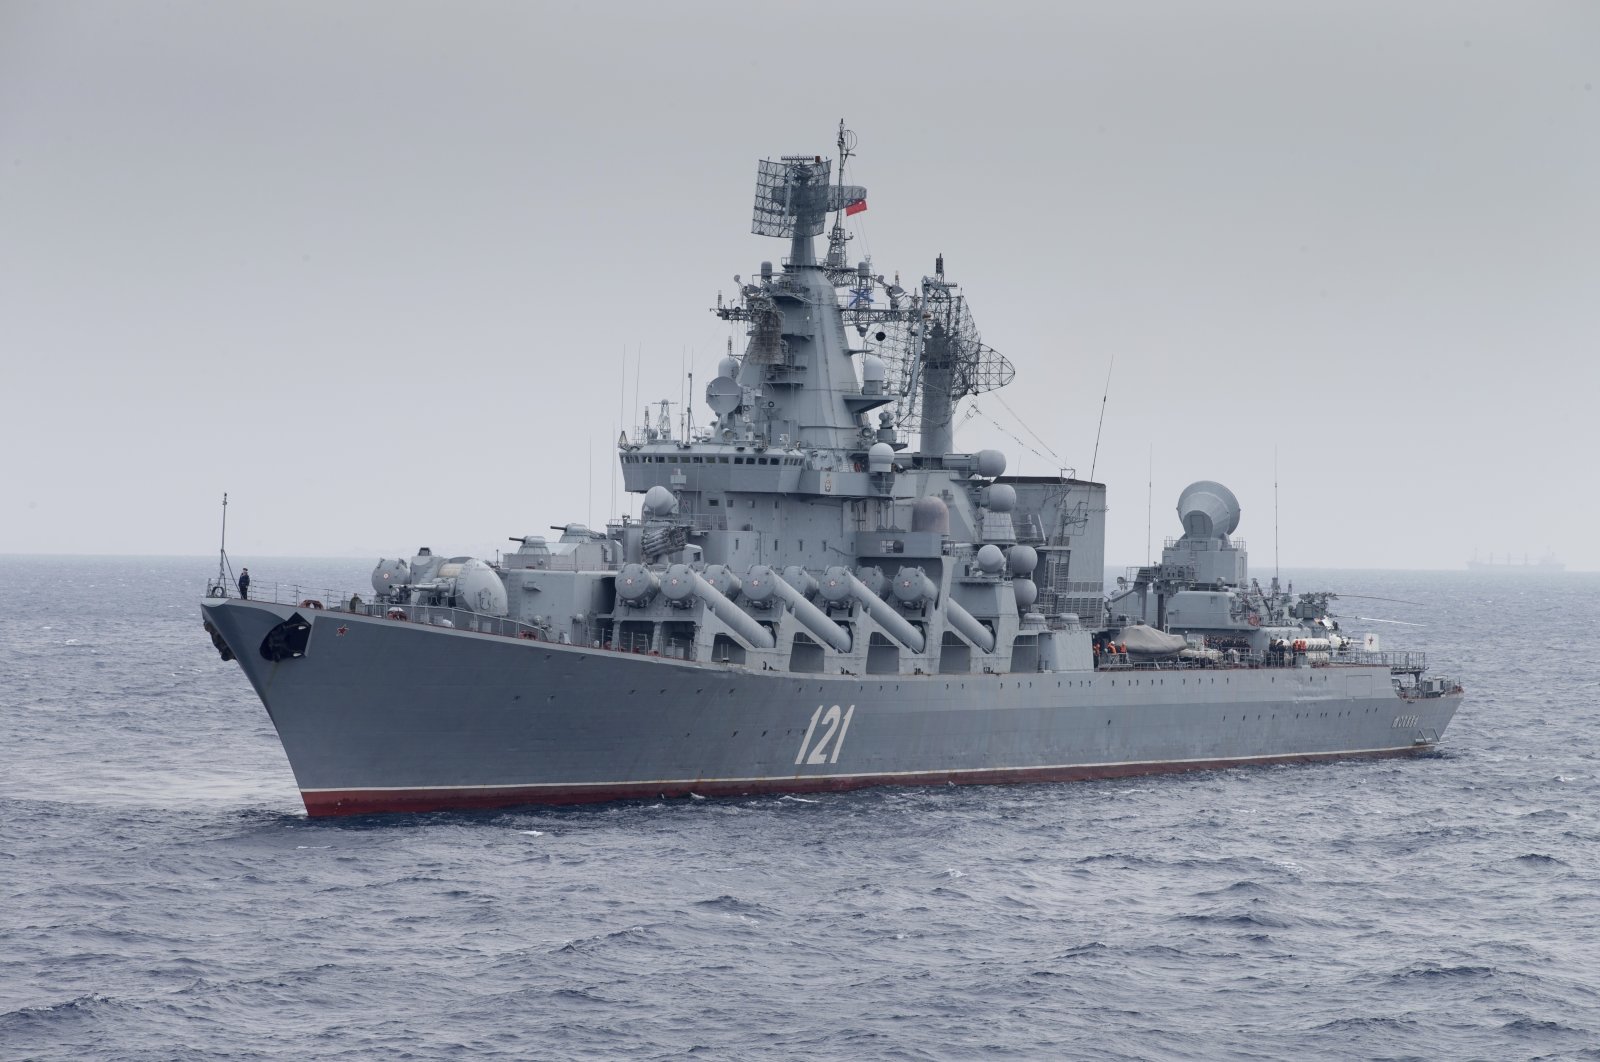 Kapal Turki menyelamatkan 54 pelaut di kapal penjelajah Rusia Moskow: Lithuania